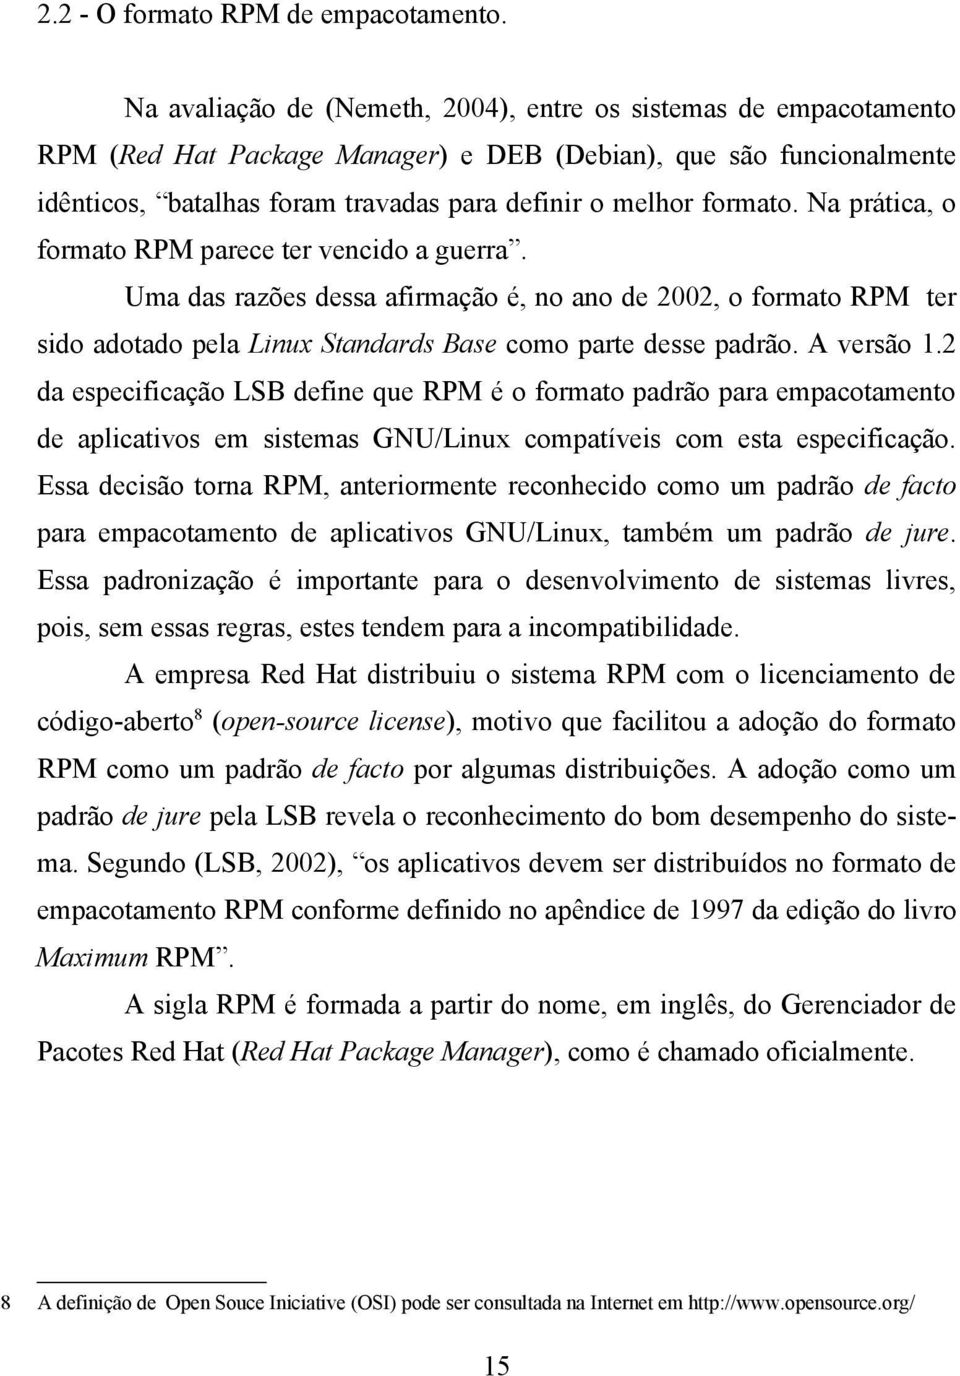 formato. Na prática, o formato RPM parece ter vencido a guerra. Uma das razões dessa afirmação é, no ano de 2002, o formato RPM ter sido adotado pela Linux Standards Base como parte desse padrão.